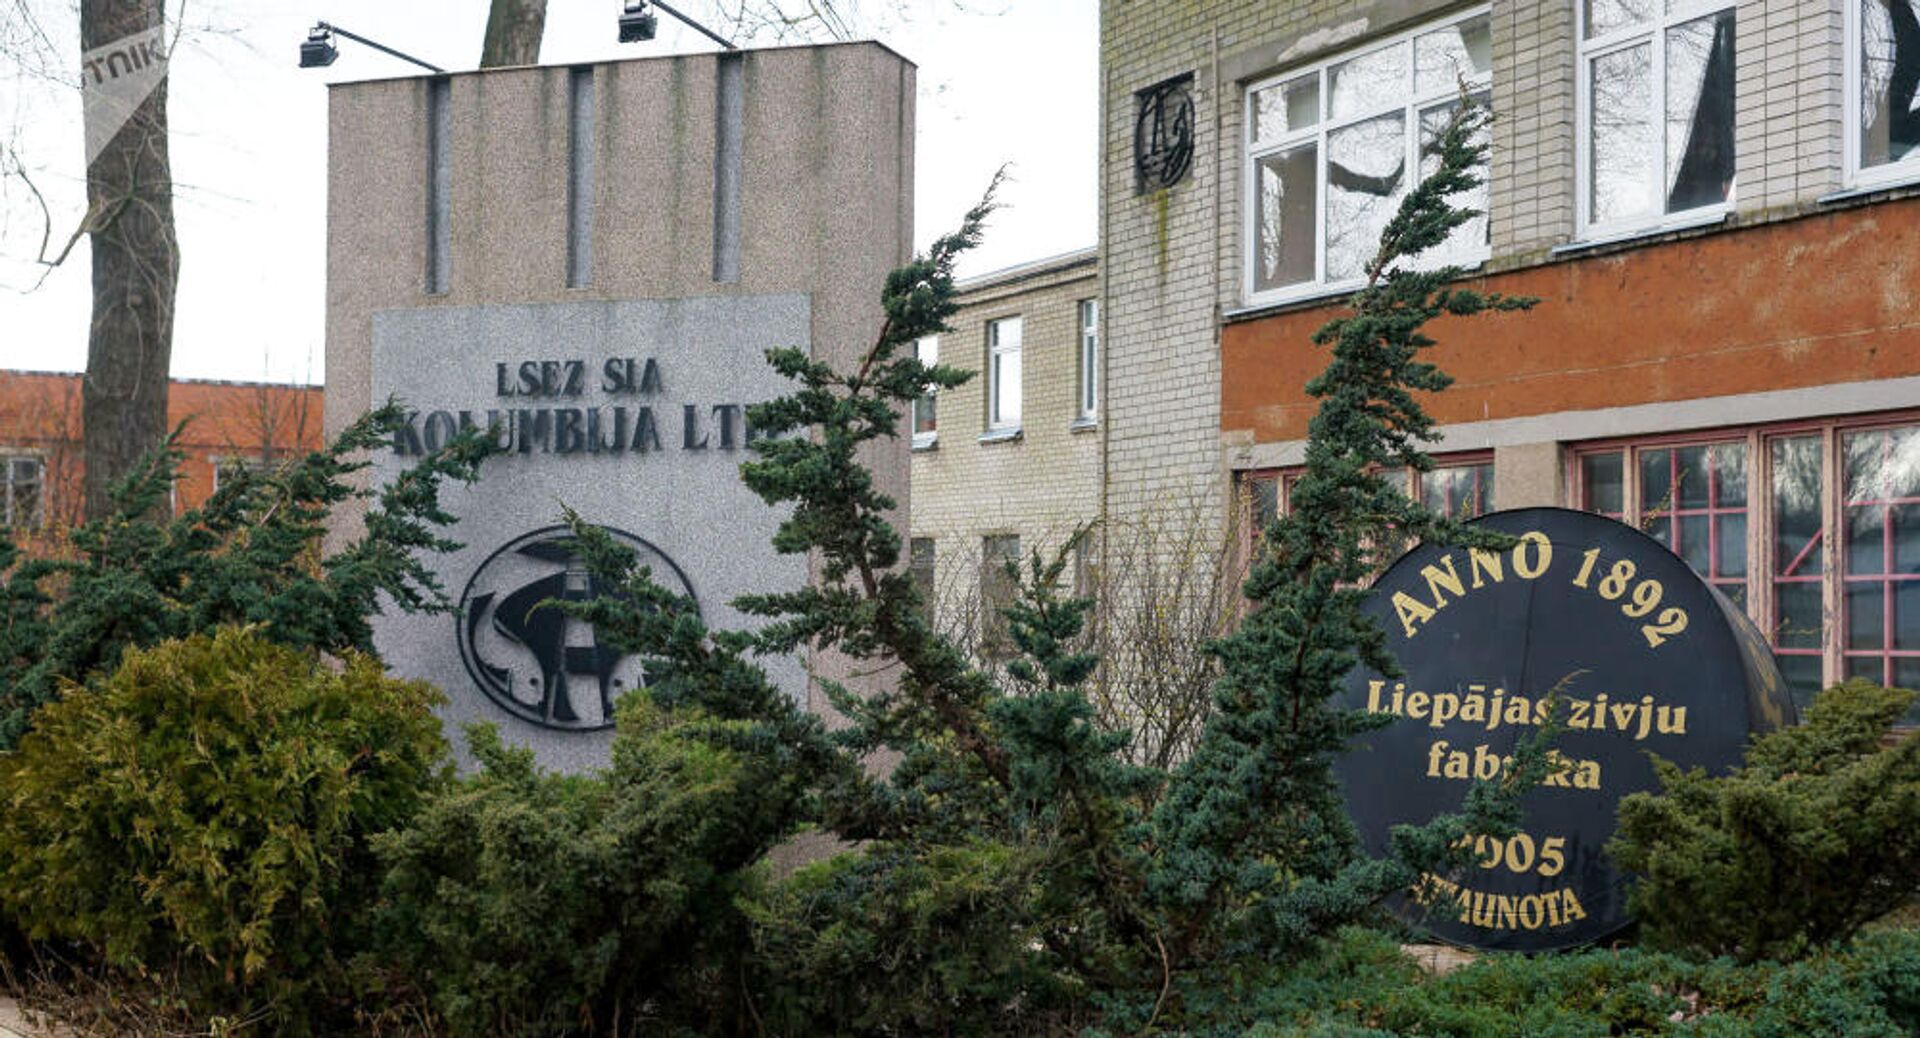 Памятник консервам на территории рыбоконсервного завода Kolumbija Ltd в Лиепае - РИА Новости, 1920, 21.09.2020